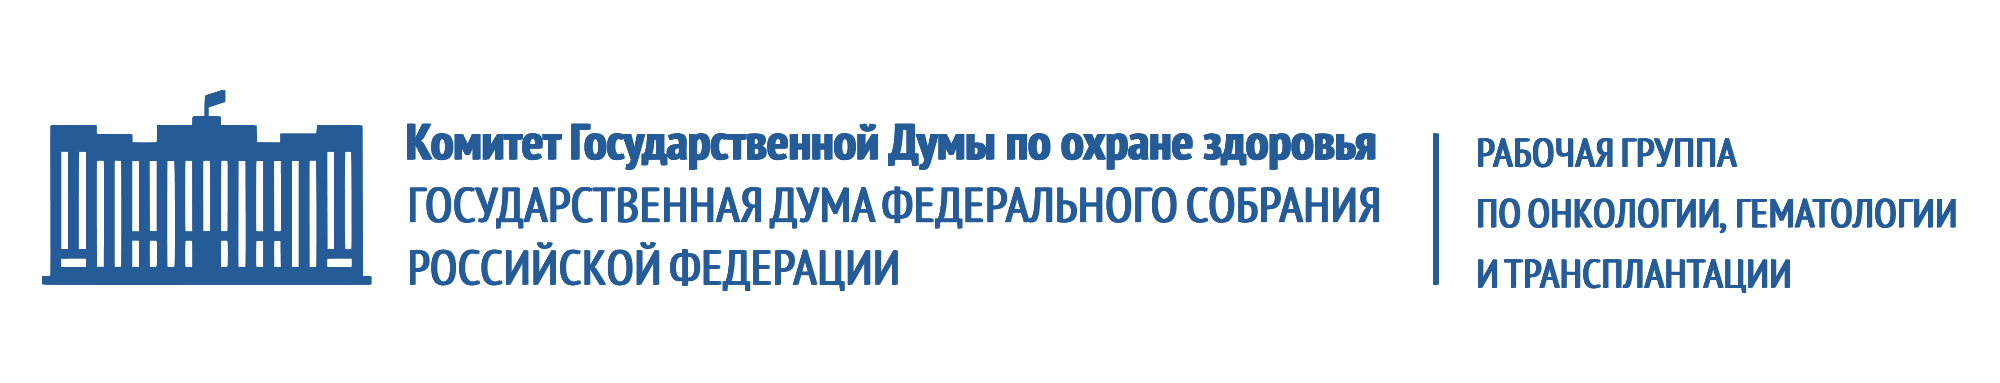 Рабочая группа по онкологии, гематологии и трансплантации Комитета по охране здоровья Государственной Думы РФ